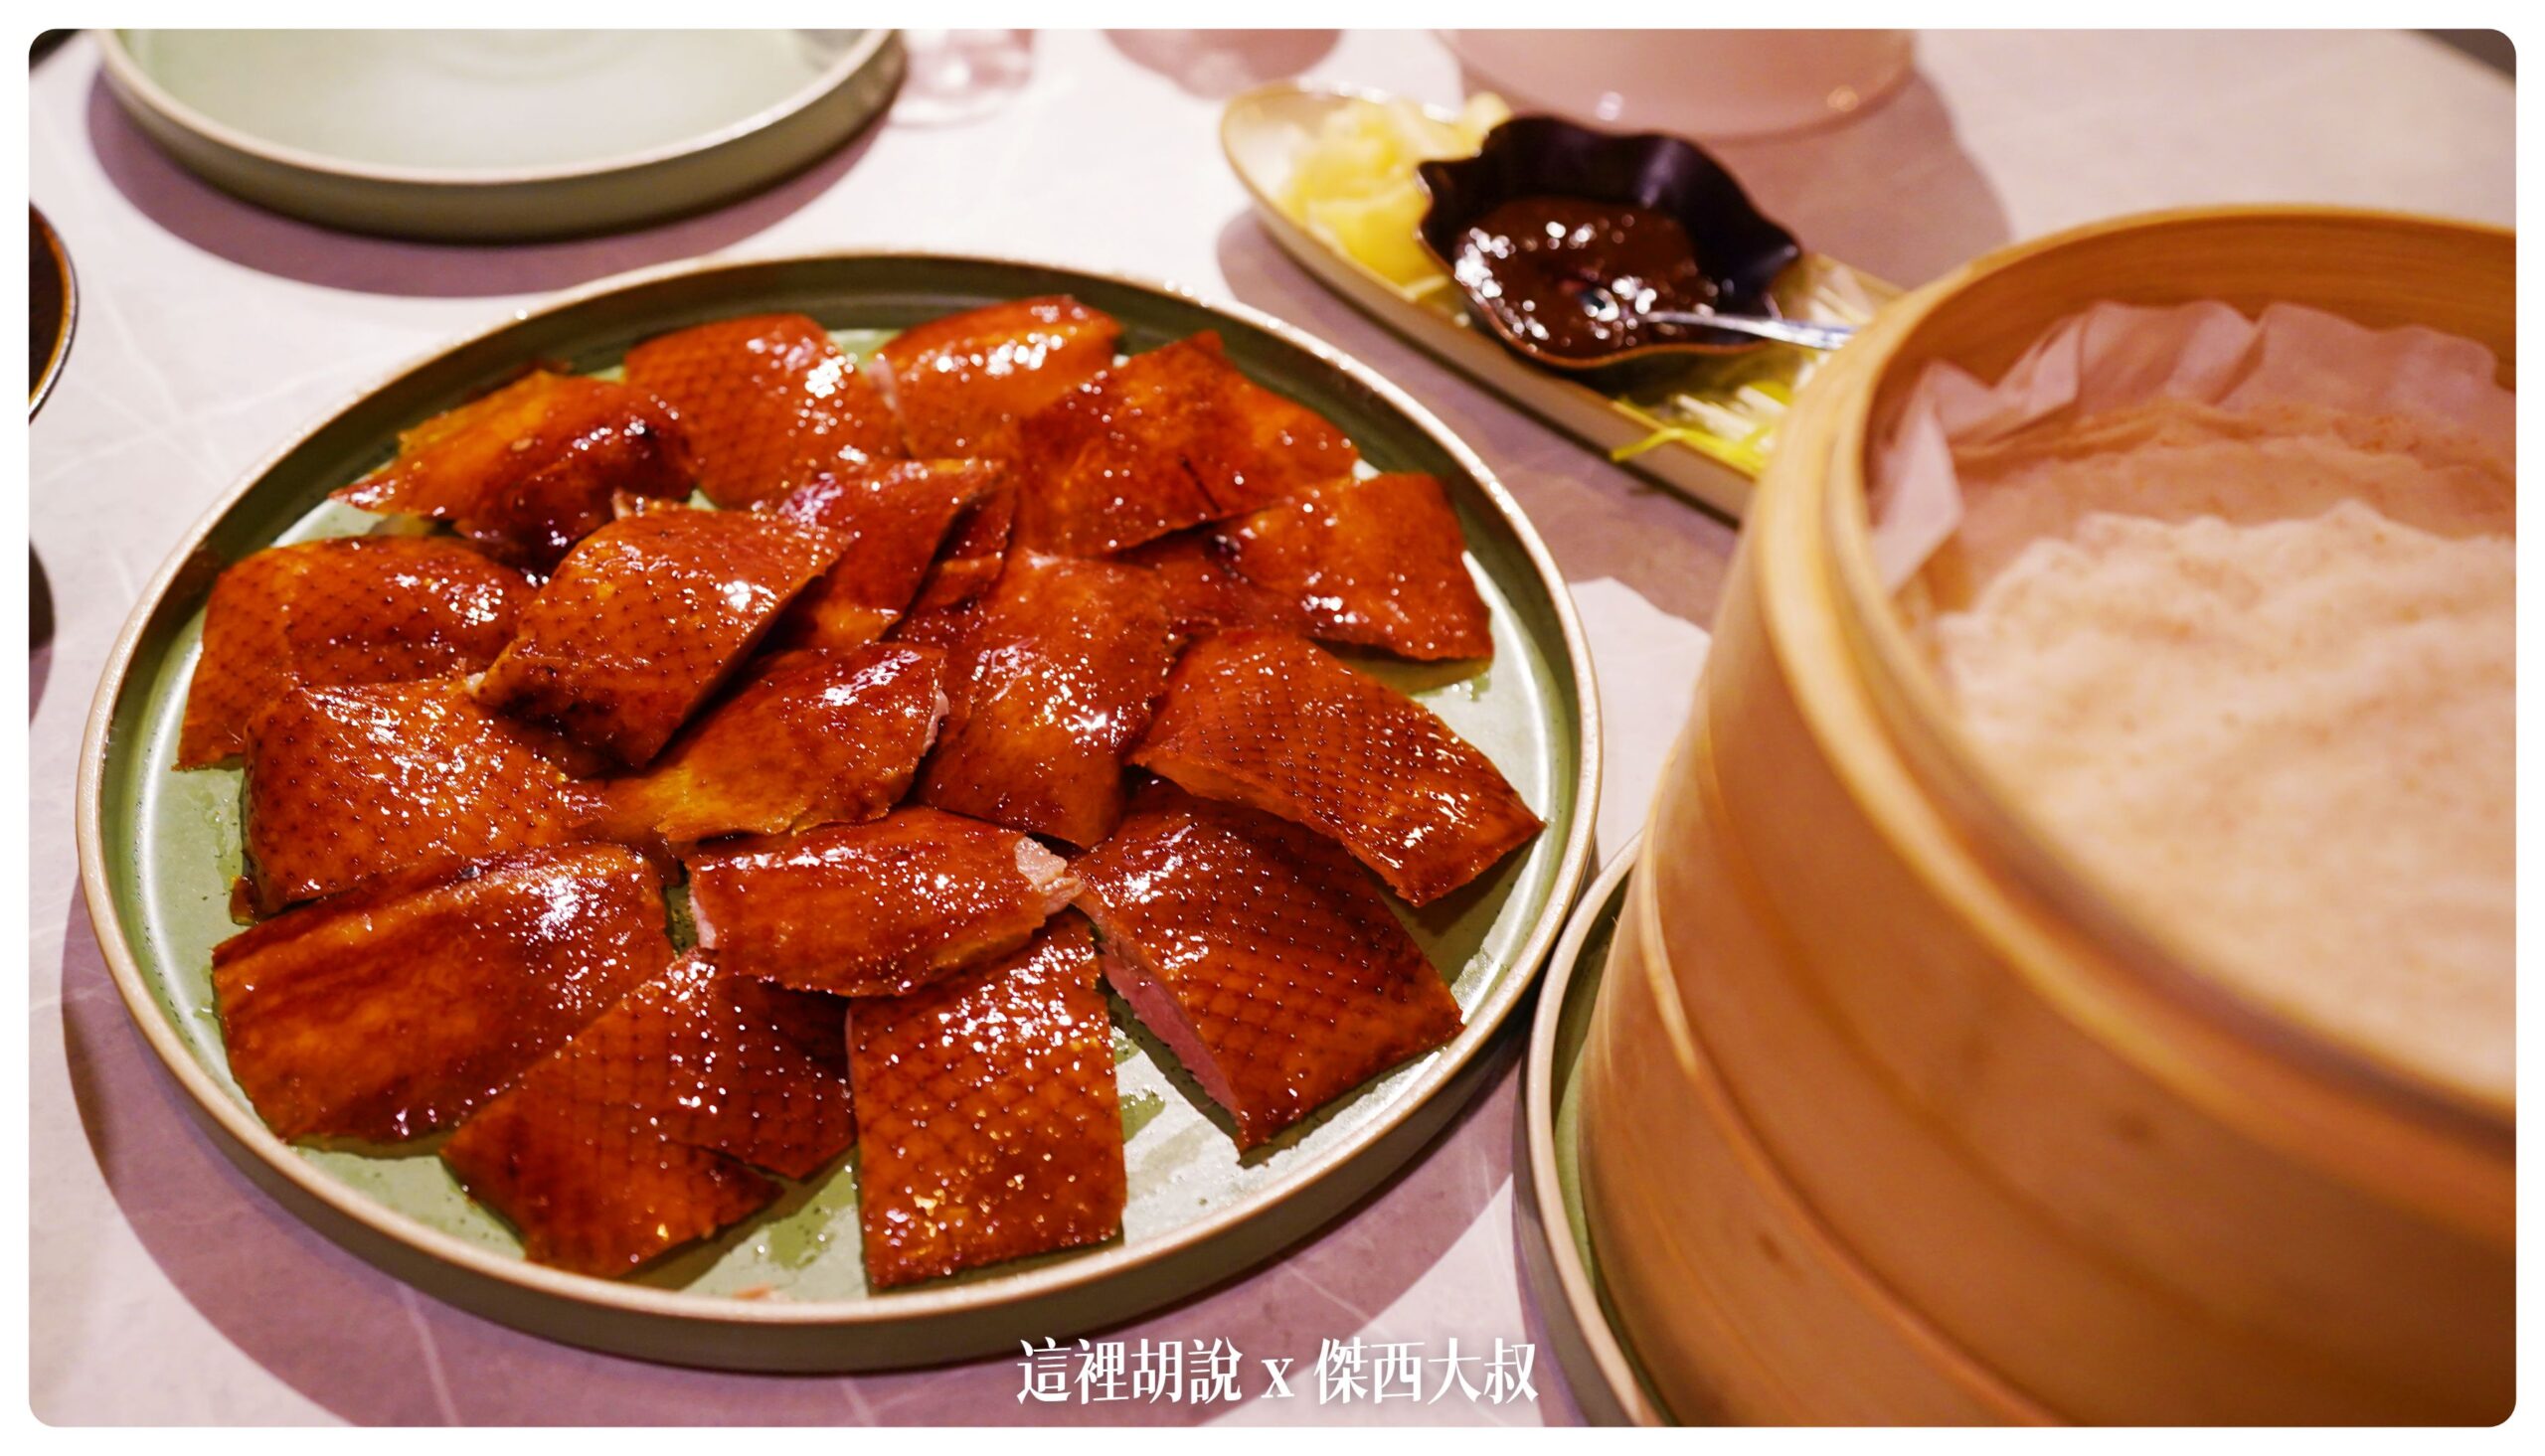 華泰餐飲集團 九華樓 兩次用餐記錄吃遍菜單 甜點很強 在台北吃烤鴨有另外一個新選擇 @嘿!部落!